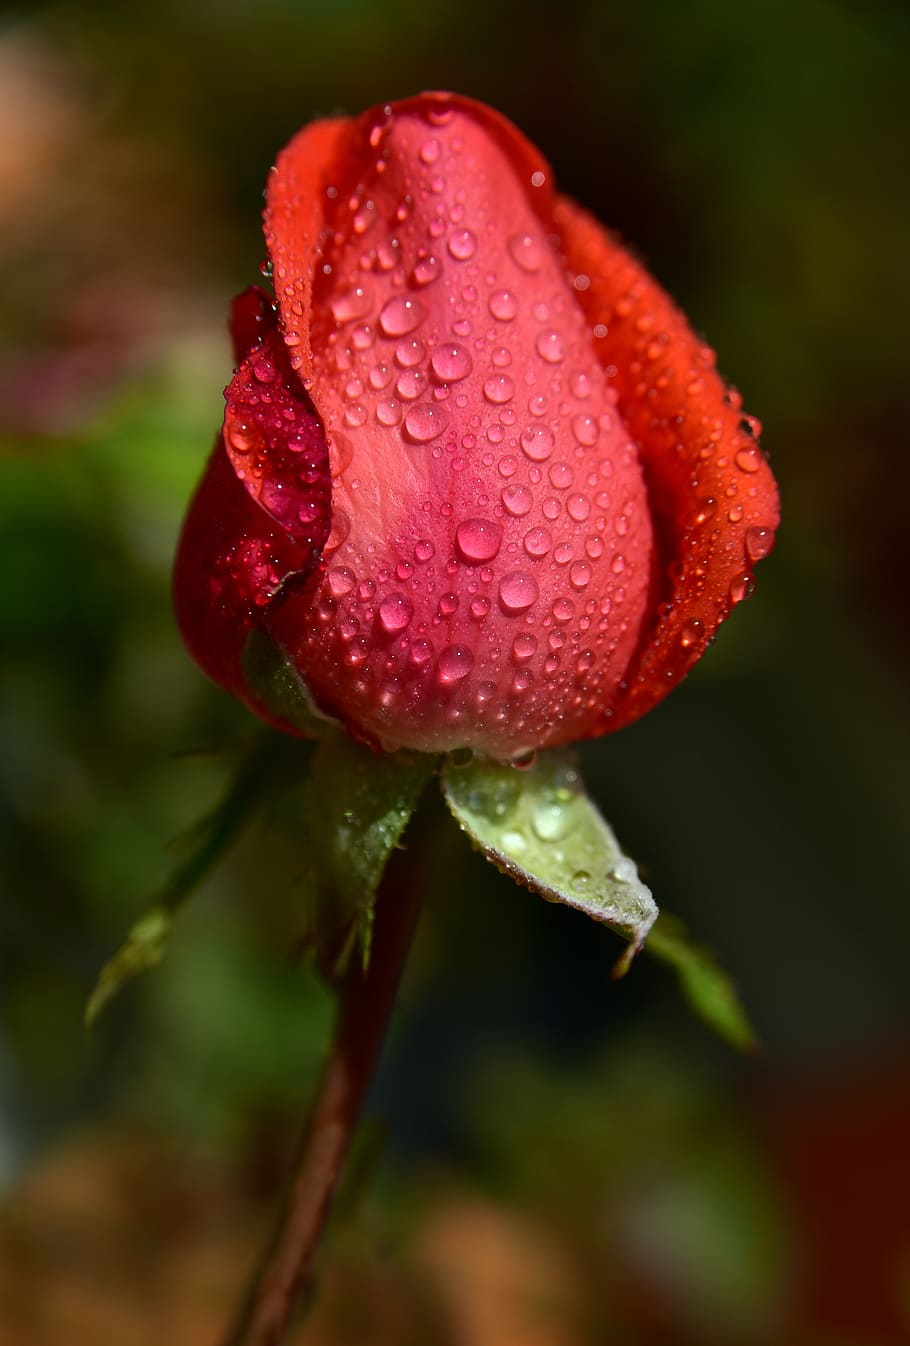 rose, bud, rosebud, pink, red, flower, tender, closed, dew